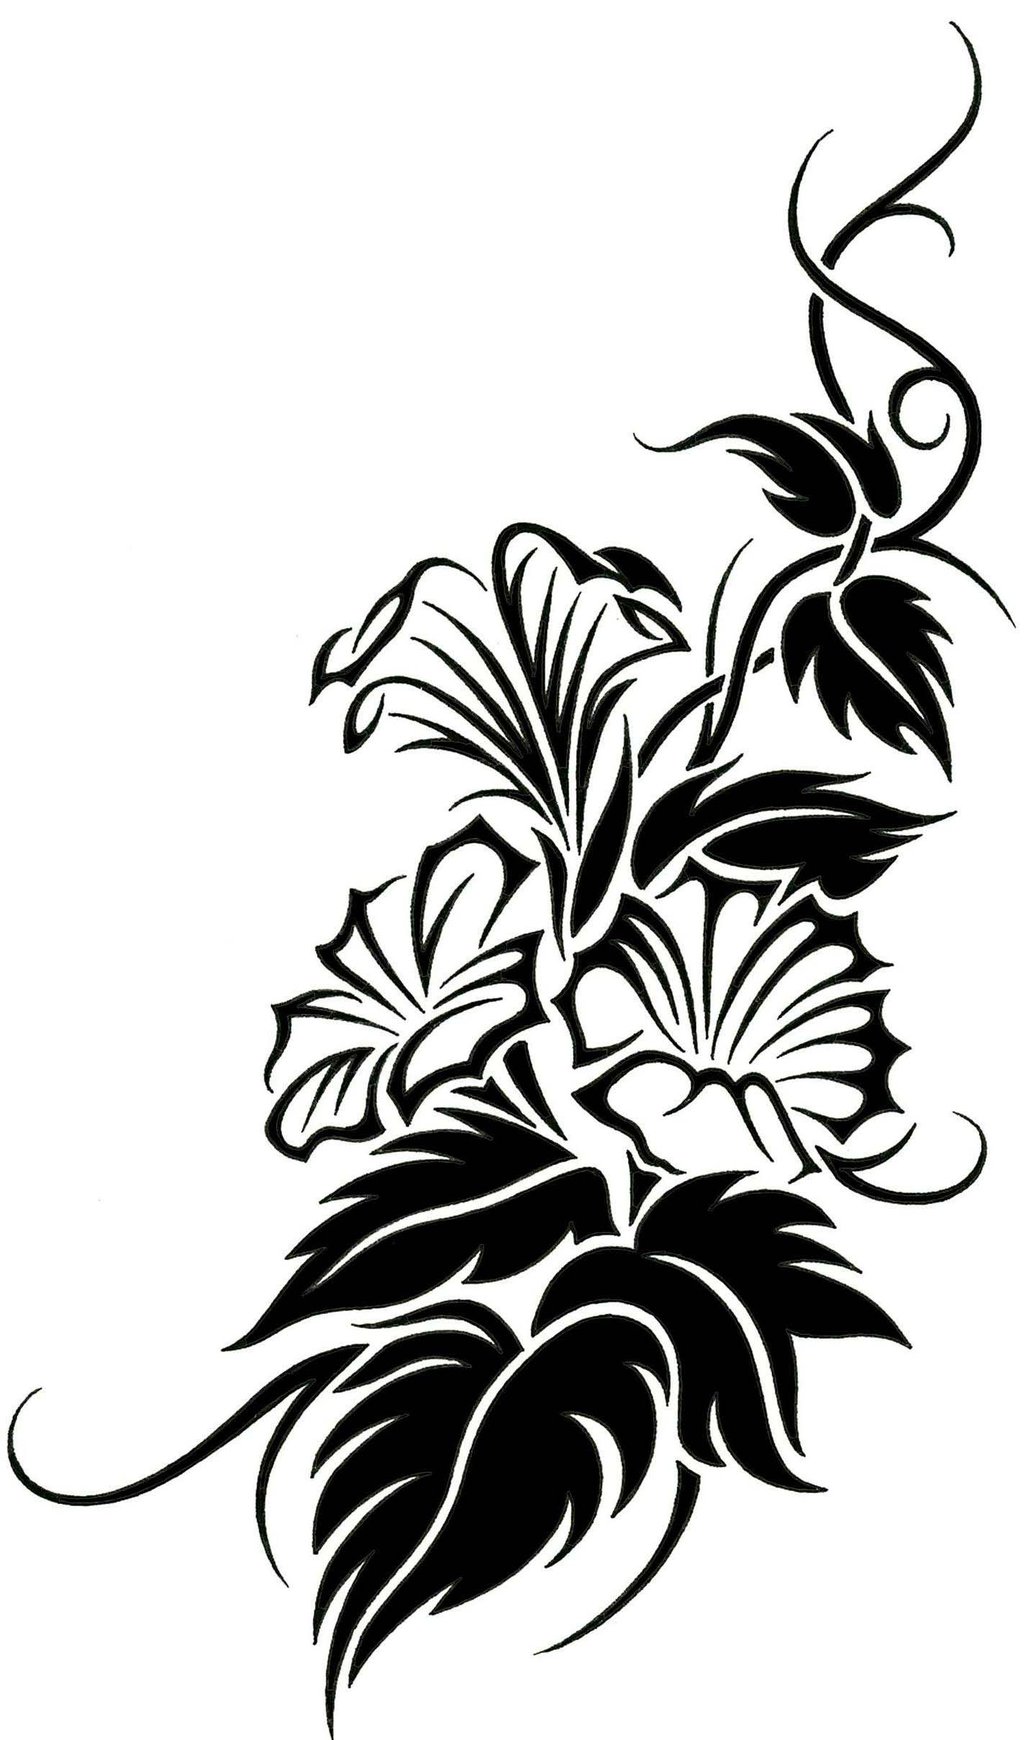 deviantART: More Like Floral Tribal Vine Tattoo Design by